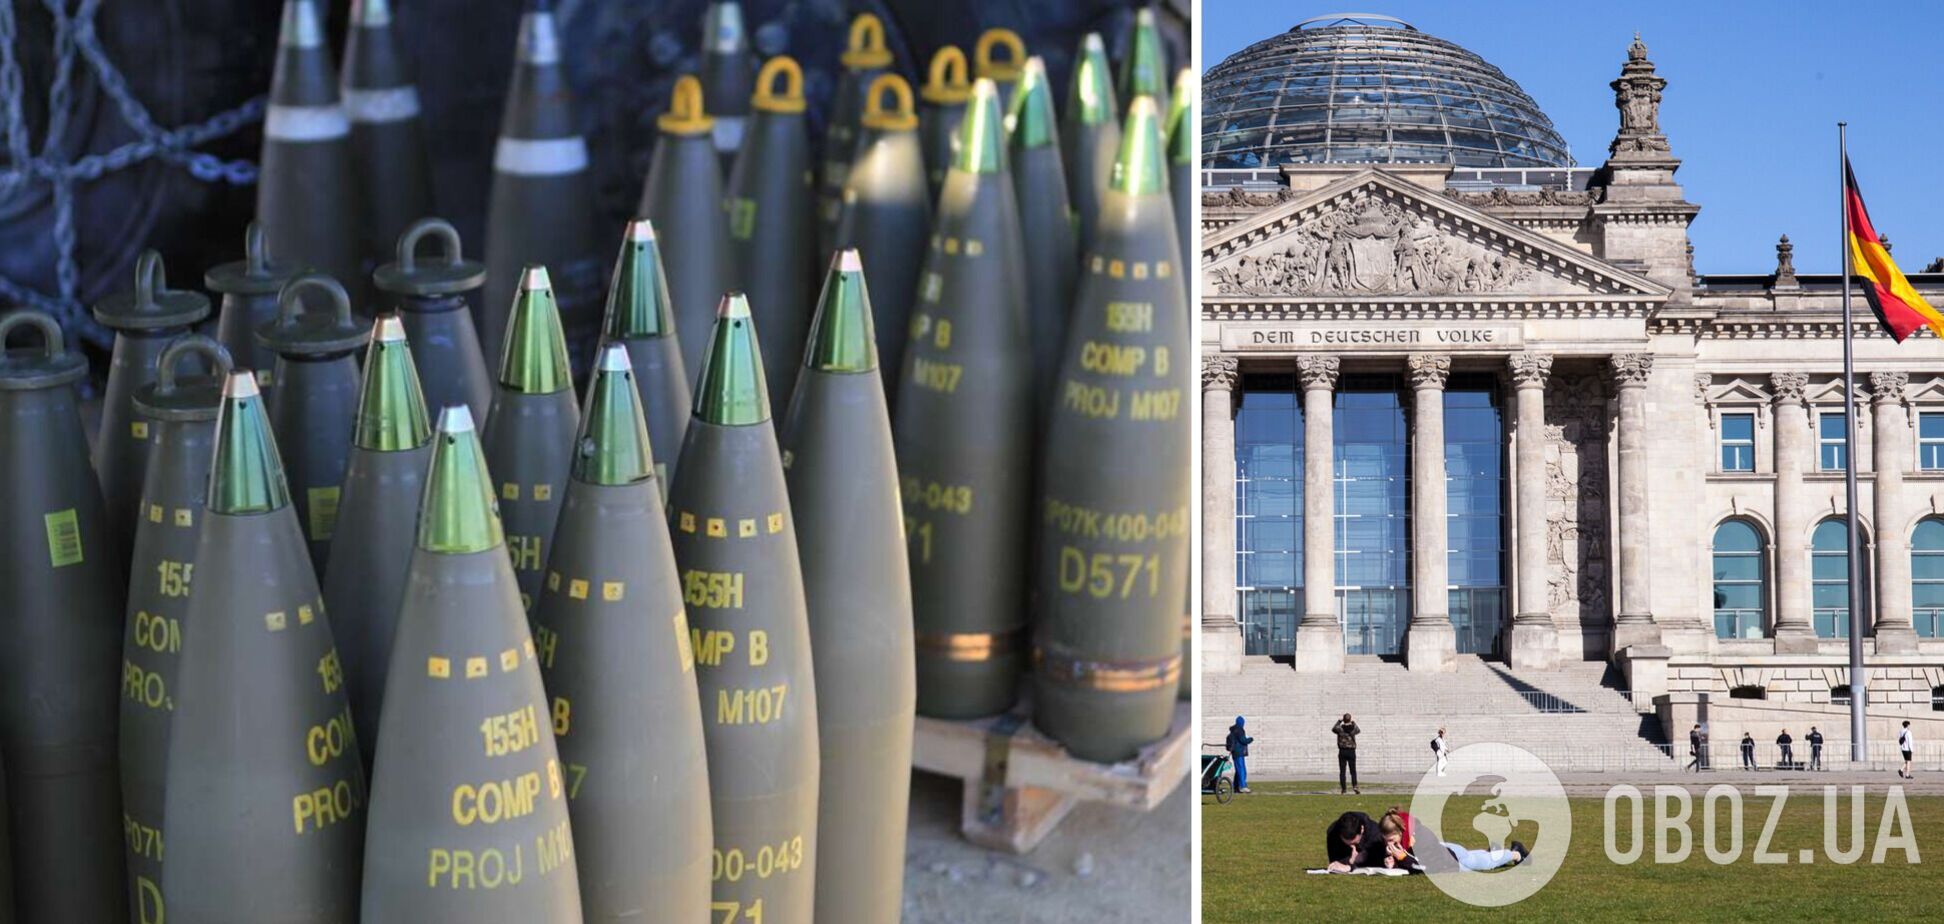 Германия активно наращивает производство боеприпасов для Украины – депутаты Бундестага